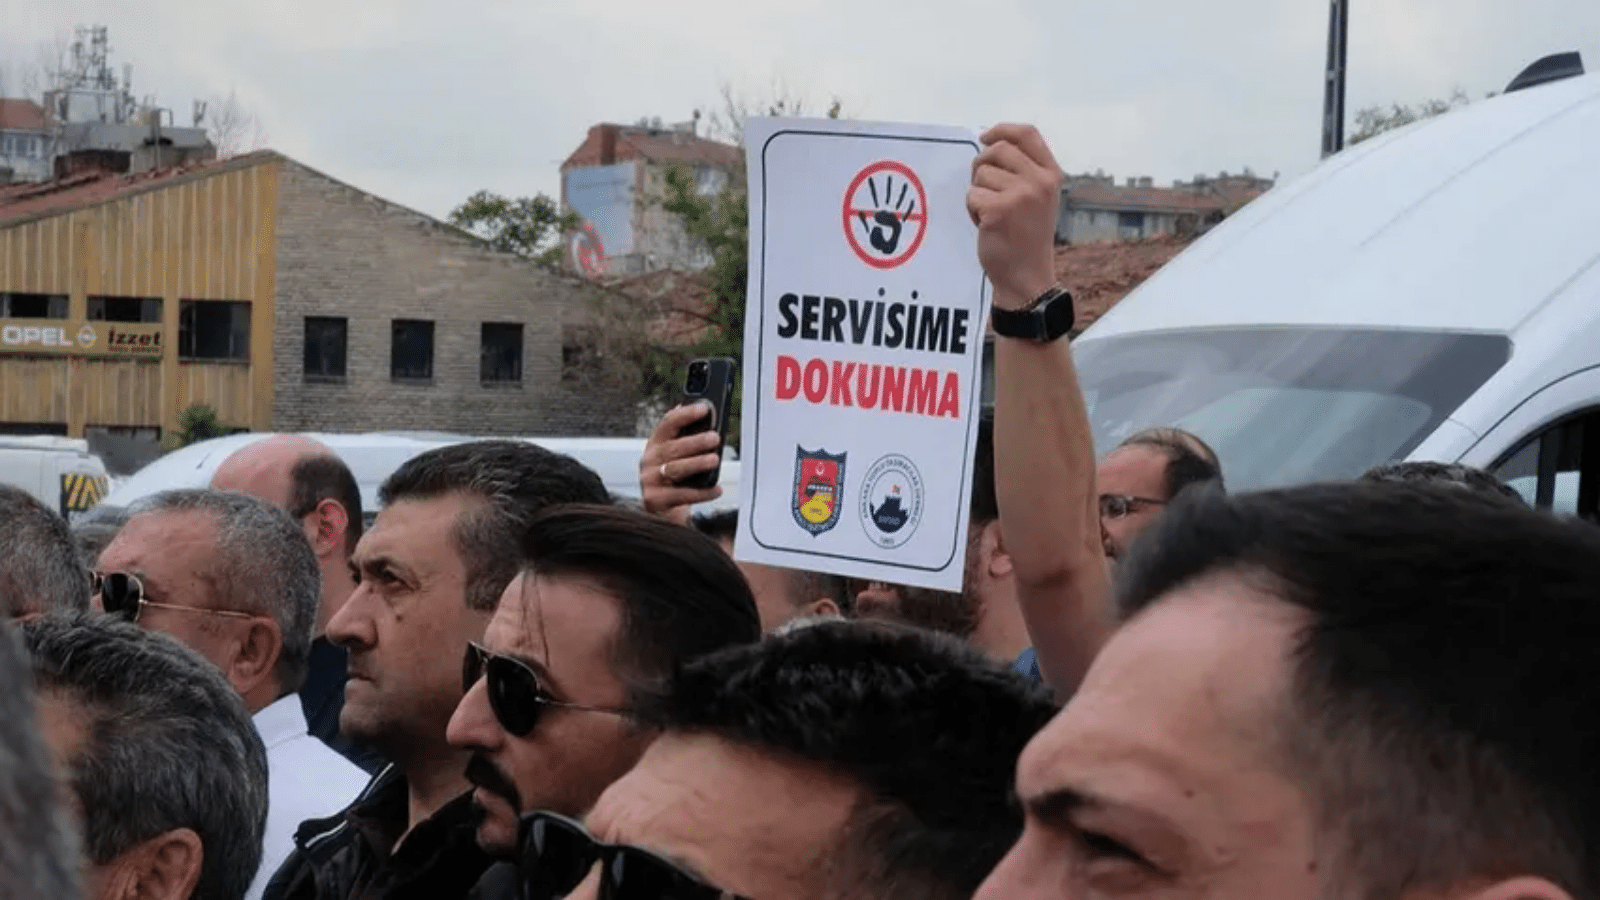 Ankara’da, kamuda servislerin kaldırılması kararına tepki